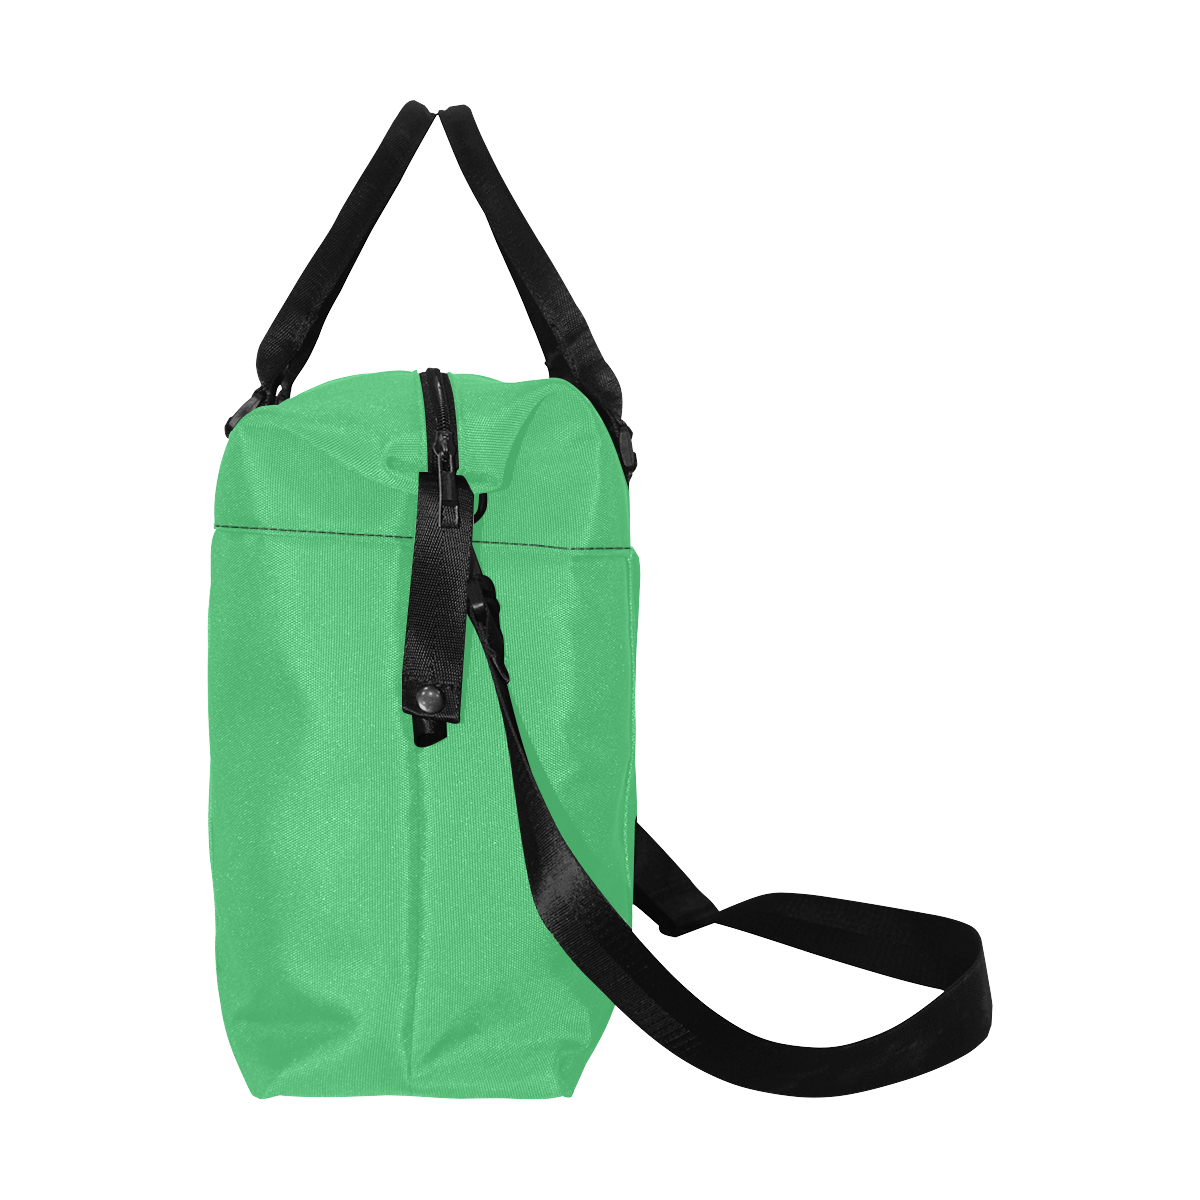 color Paris green Large Capacity Duffle Bag (Model 1715)